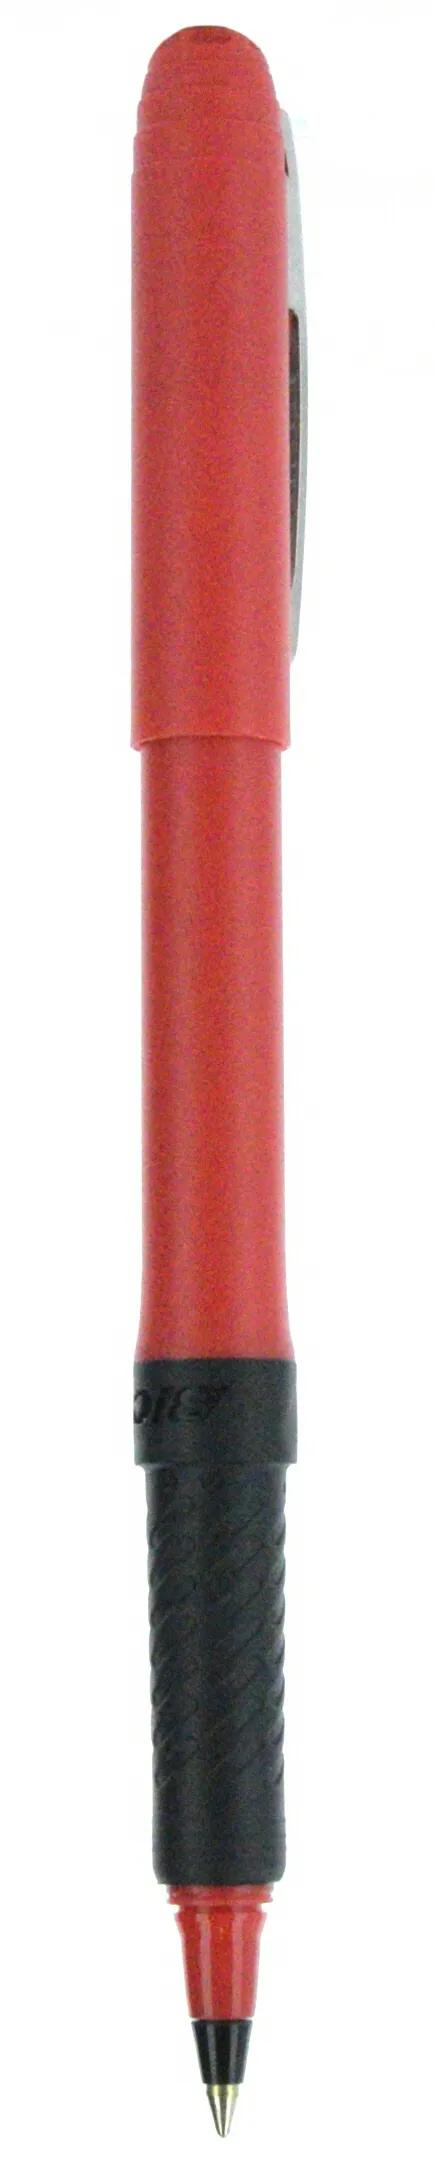 BIC® Grip Roller Pen 67 of 147